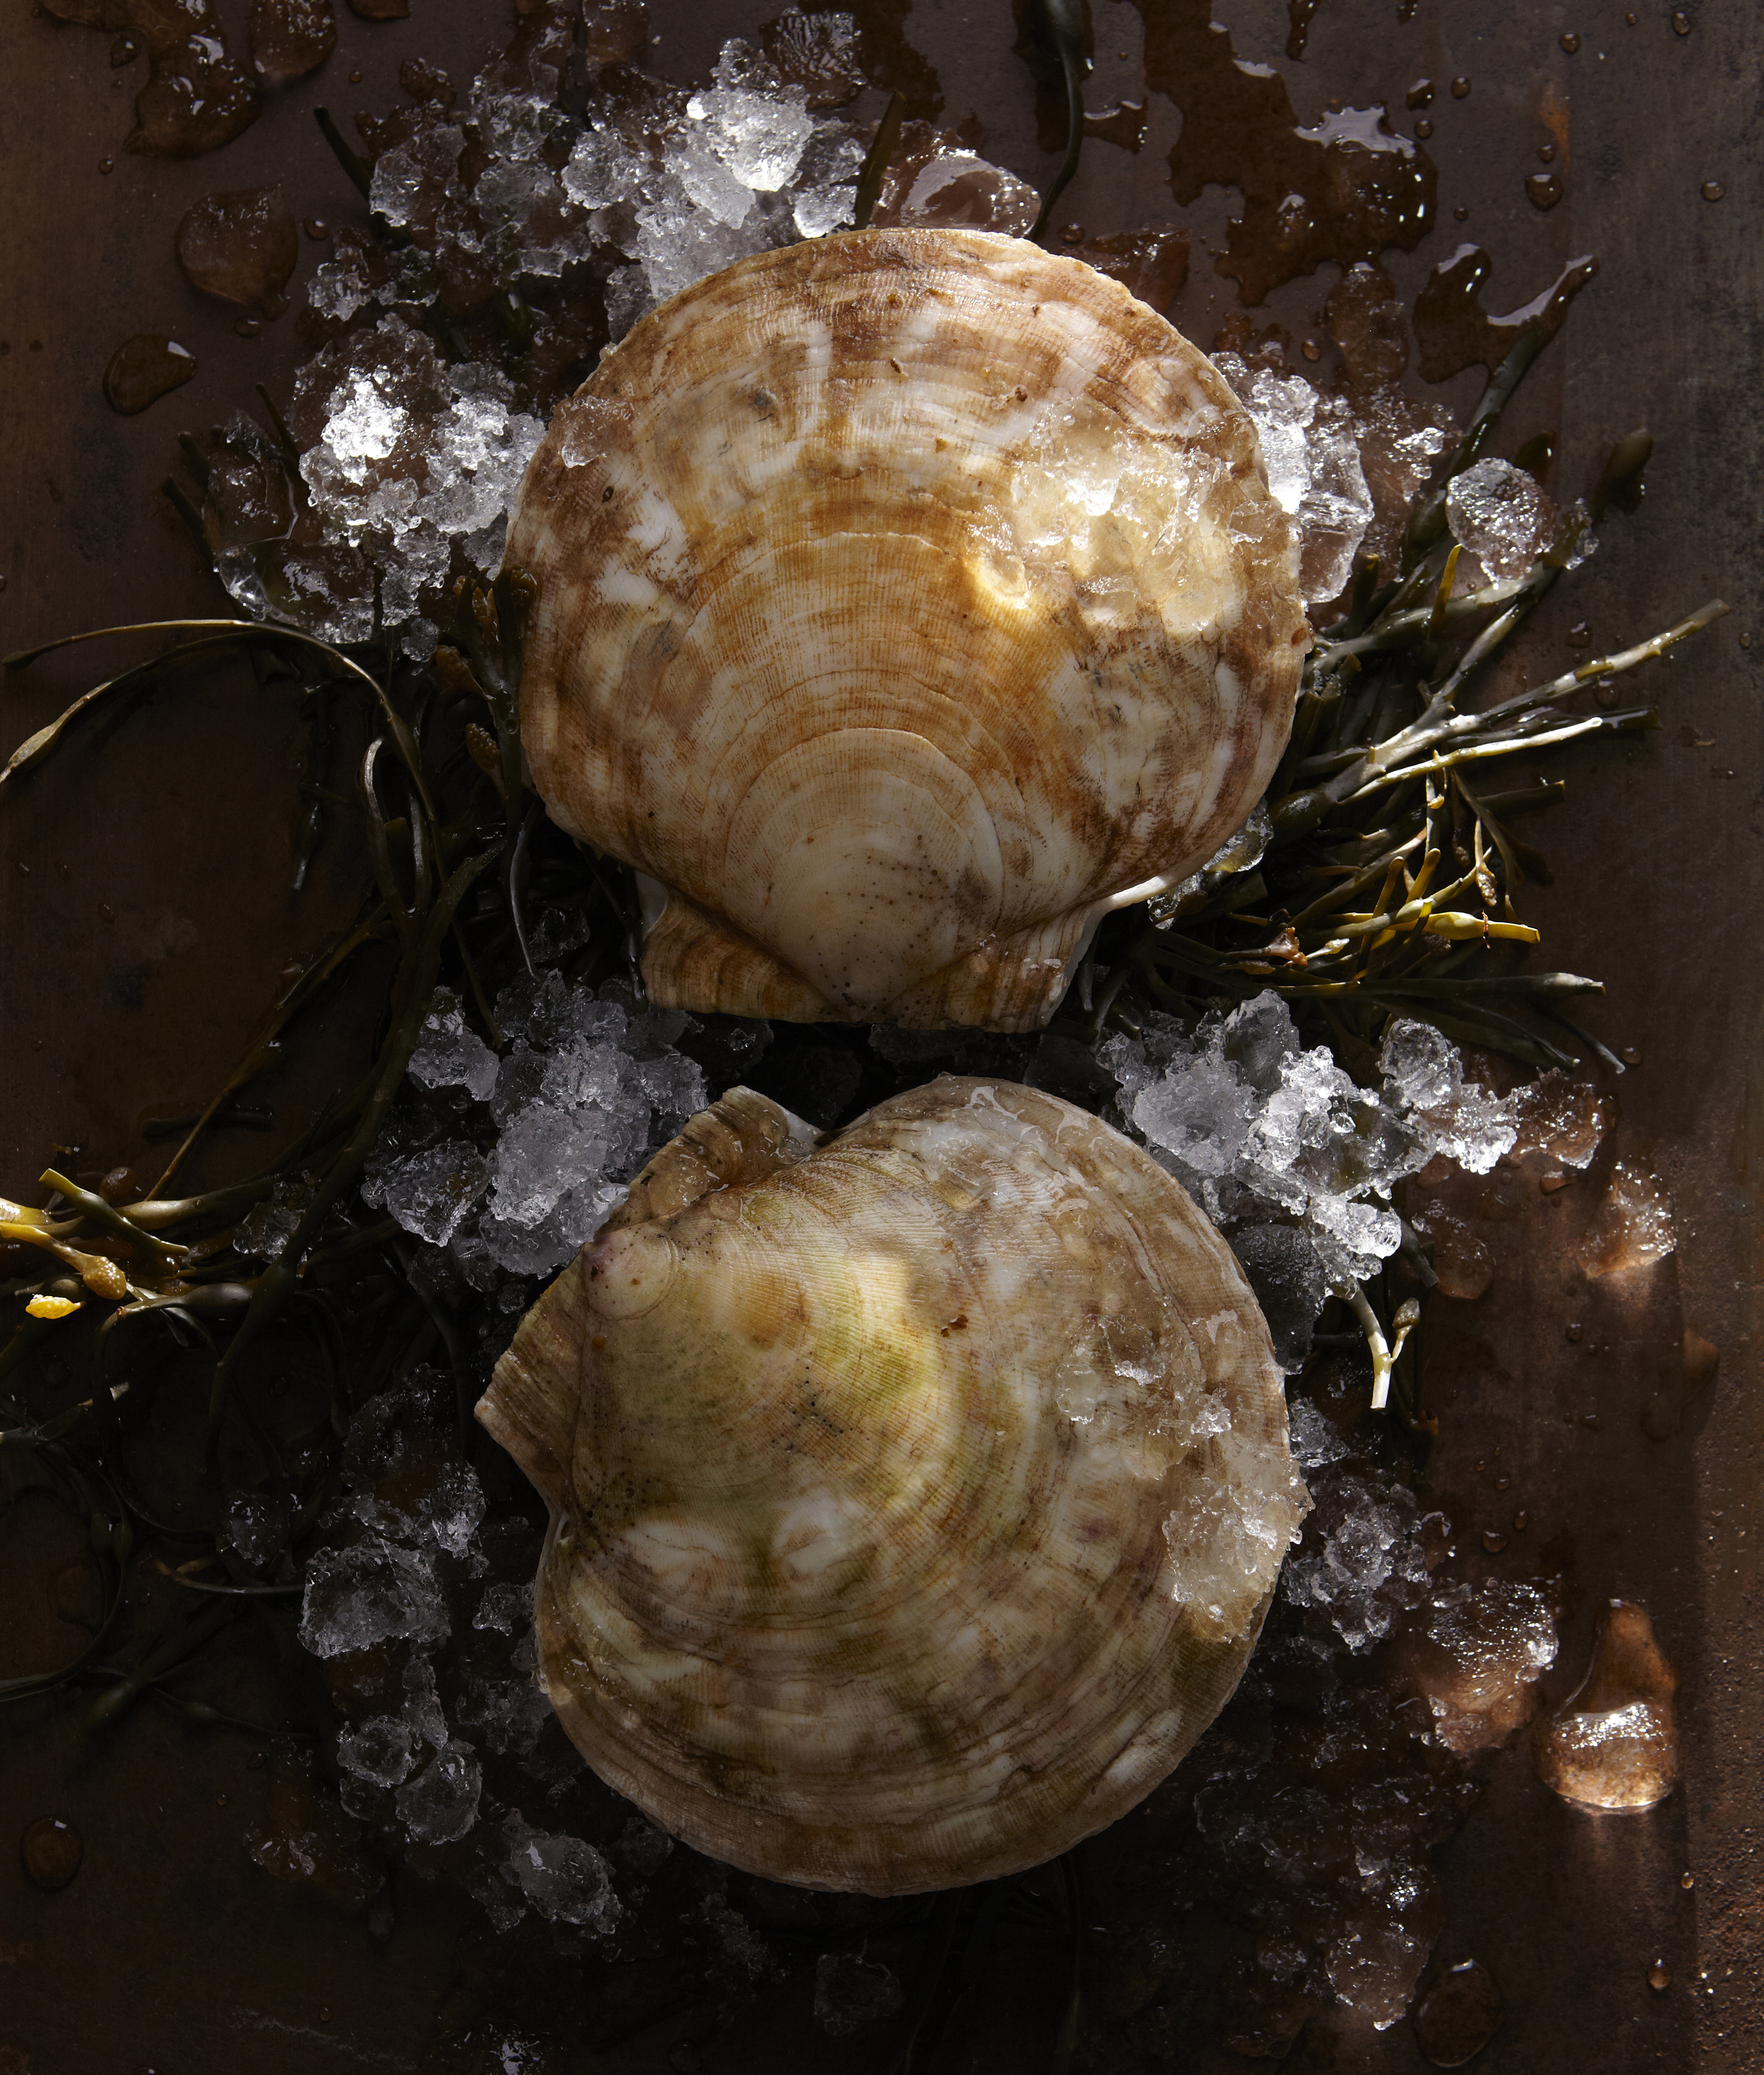 iced clams